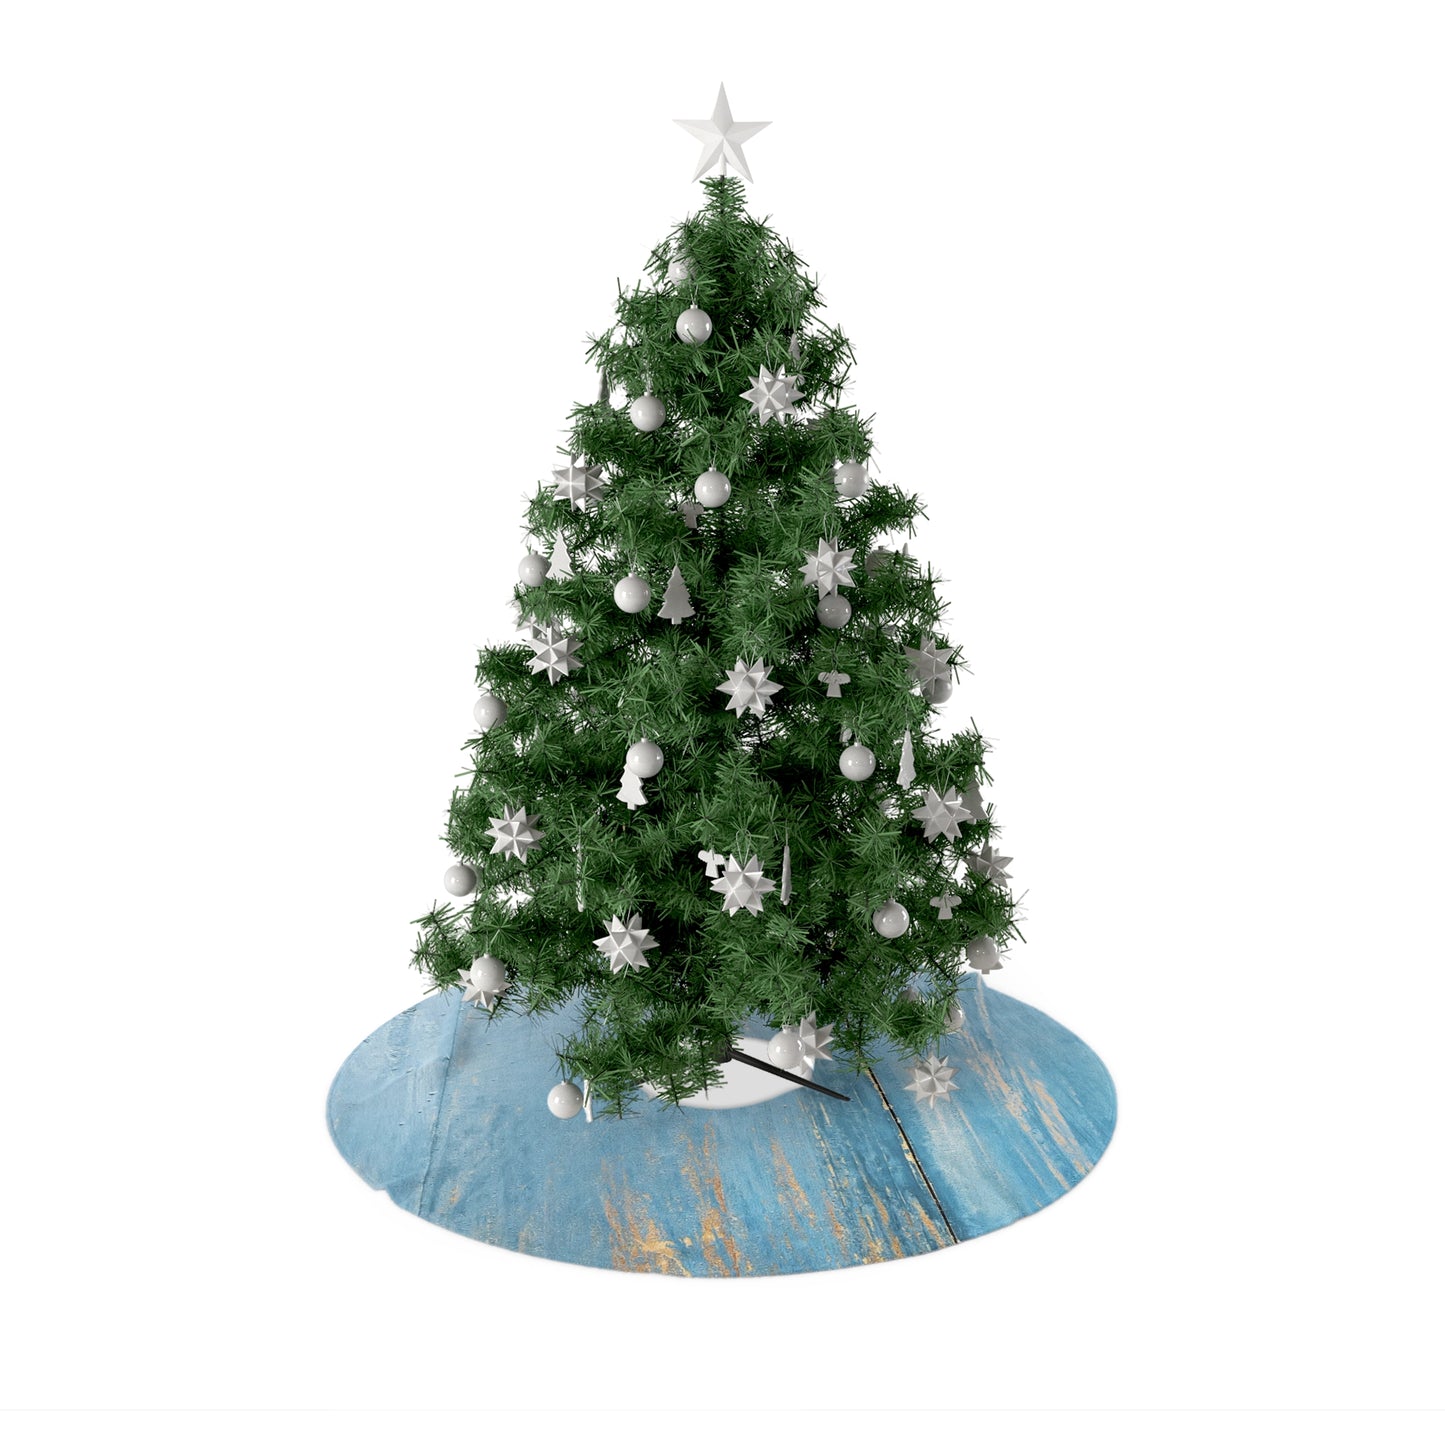 Teal Barnboard Christmas Tree Skirts